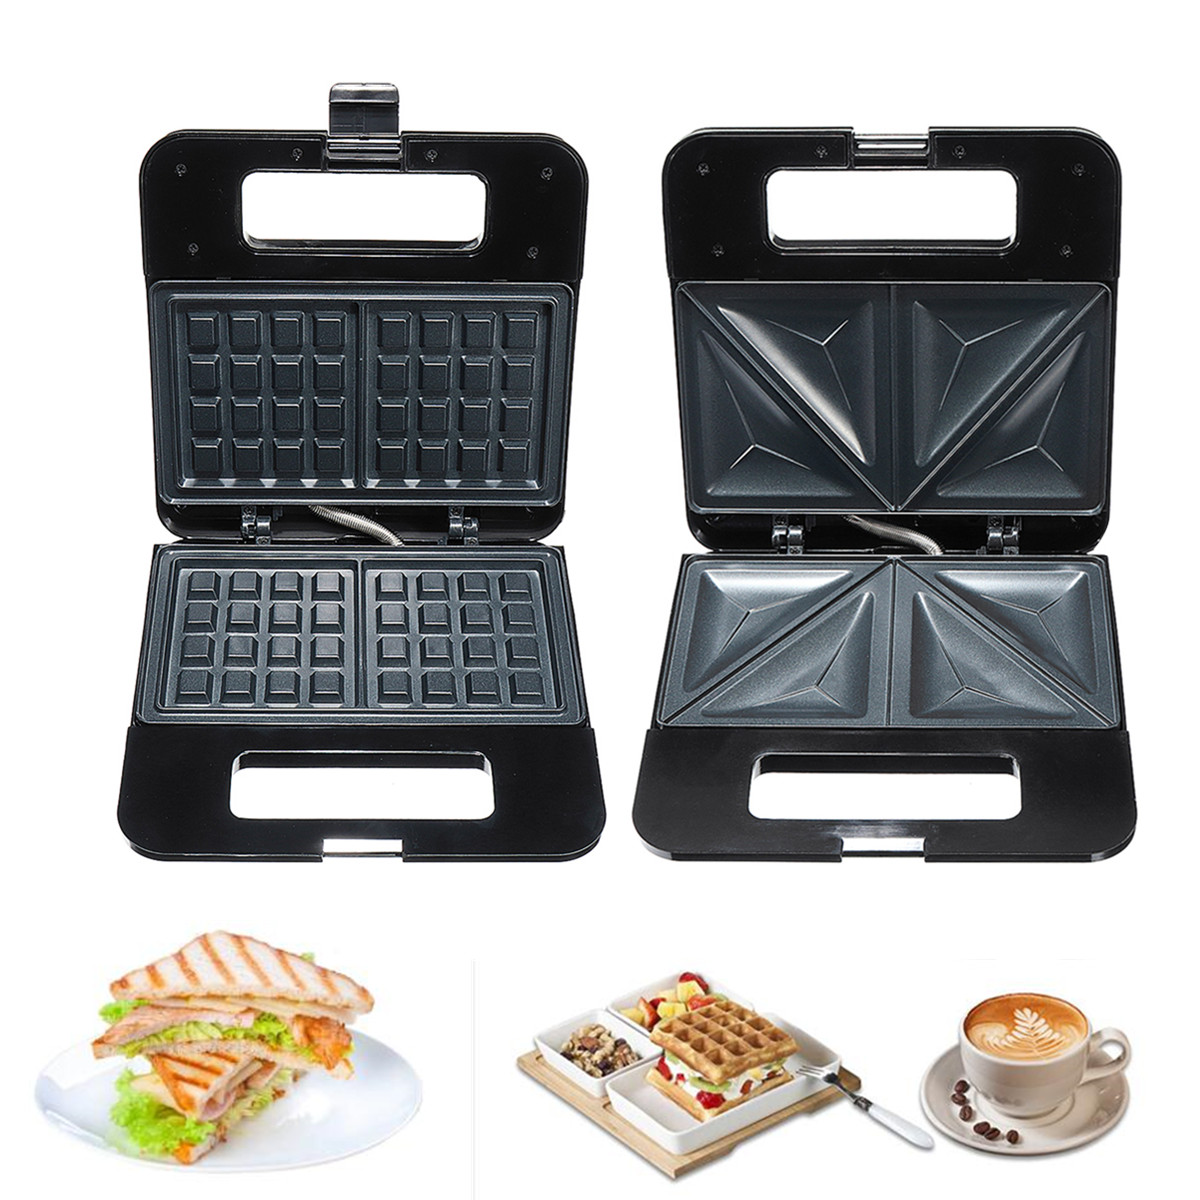 

220V 750W Household Electric Sandwich Waffle Maker Machine Breakfast Baker